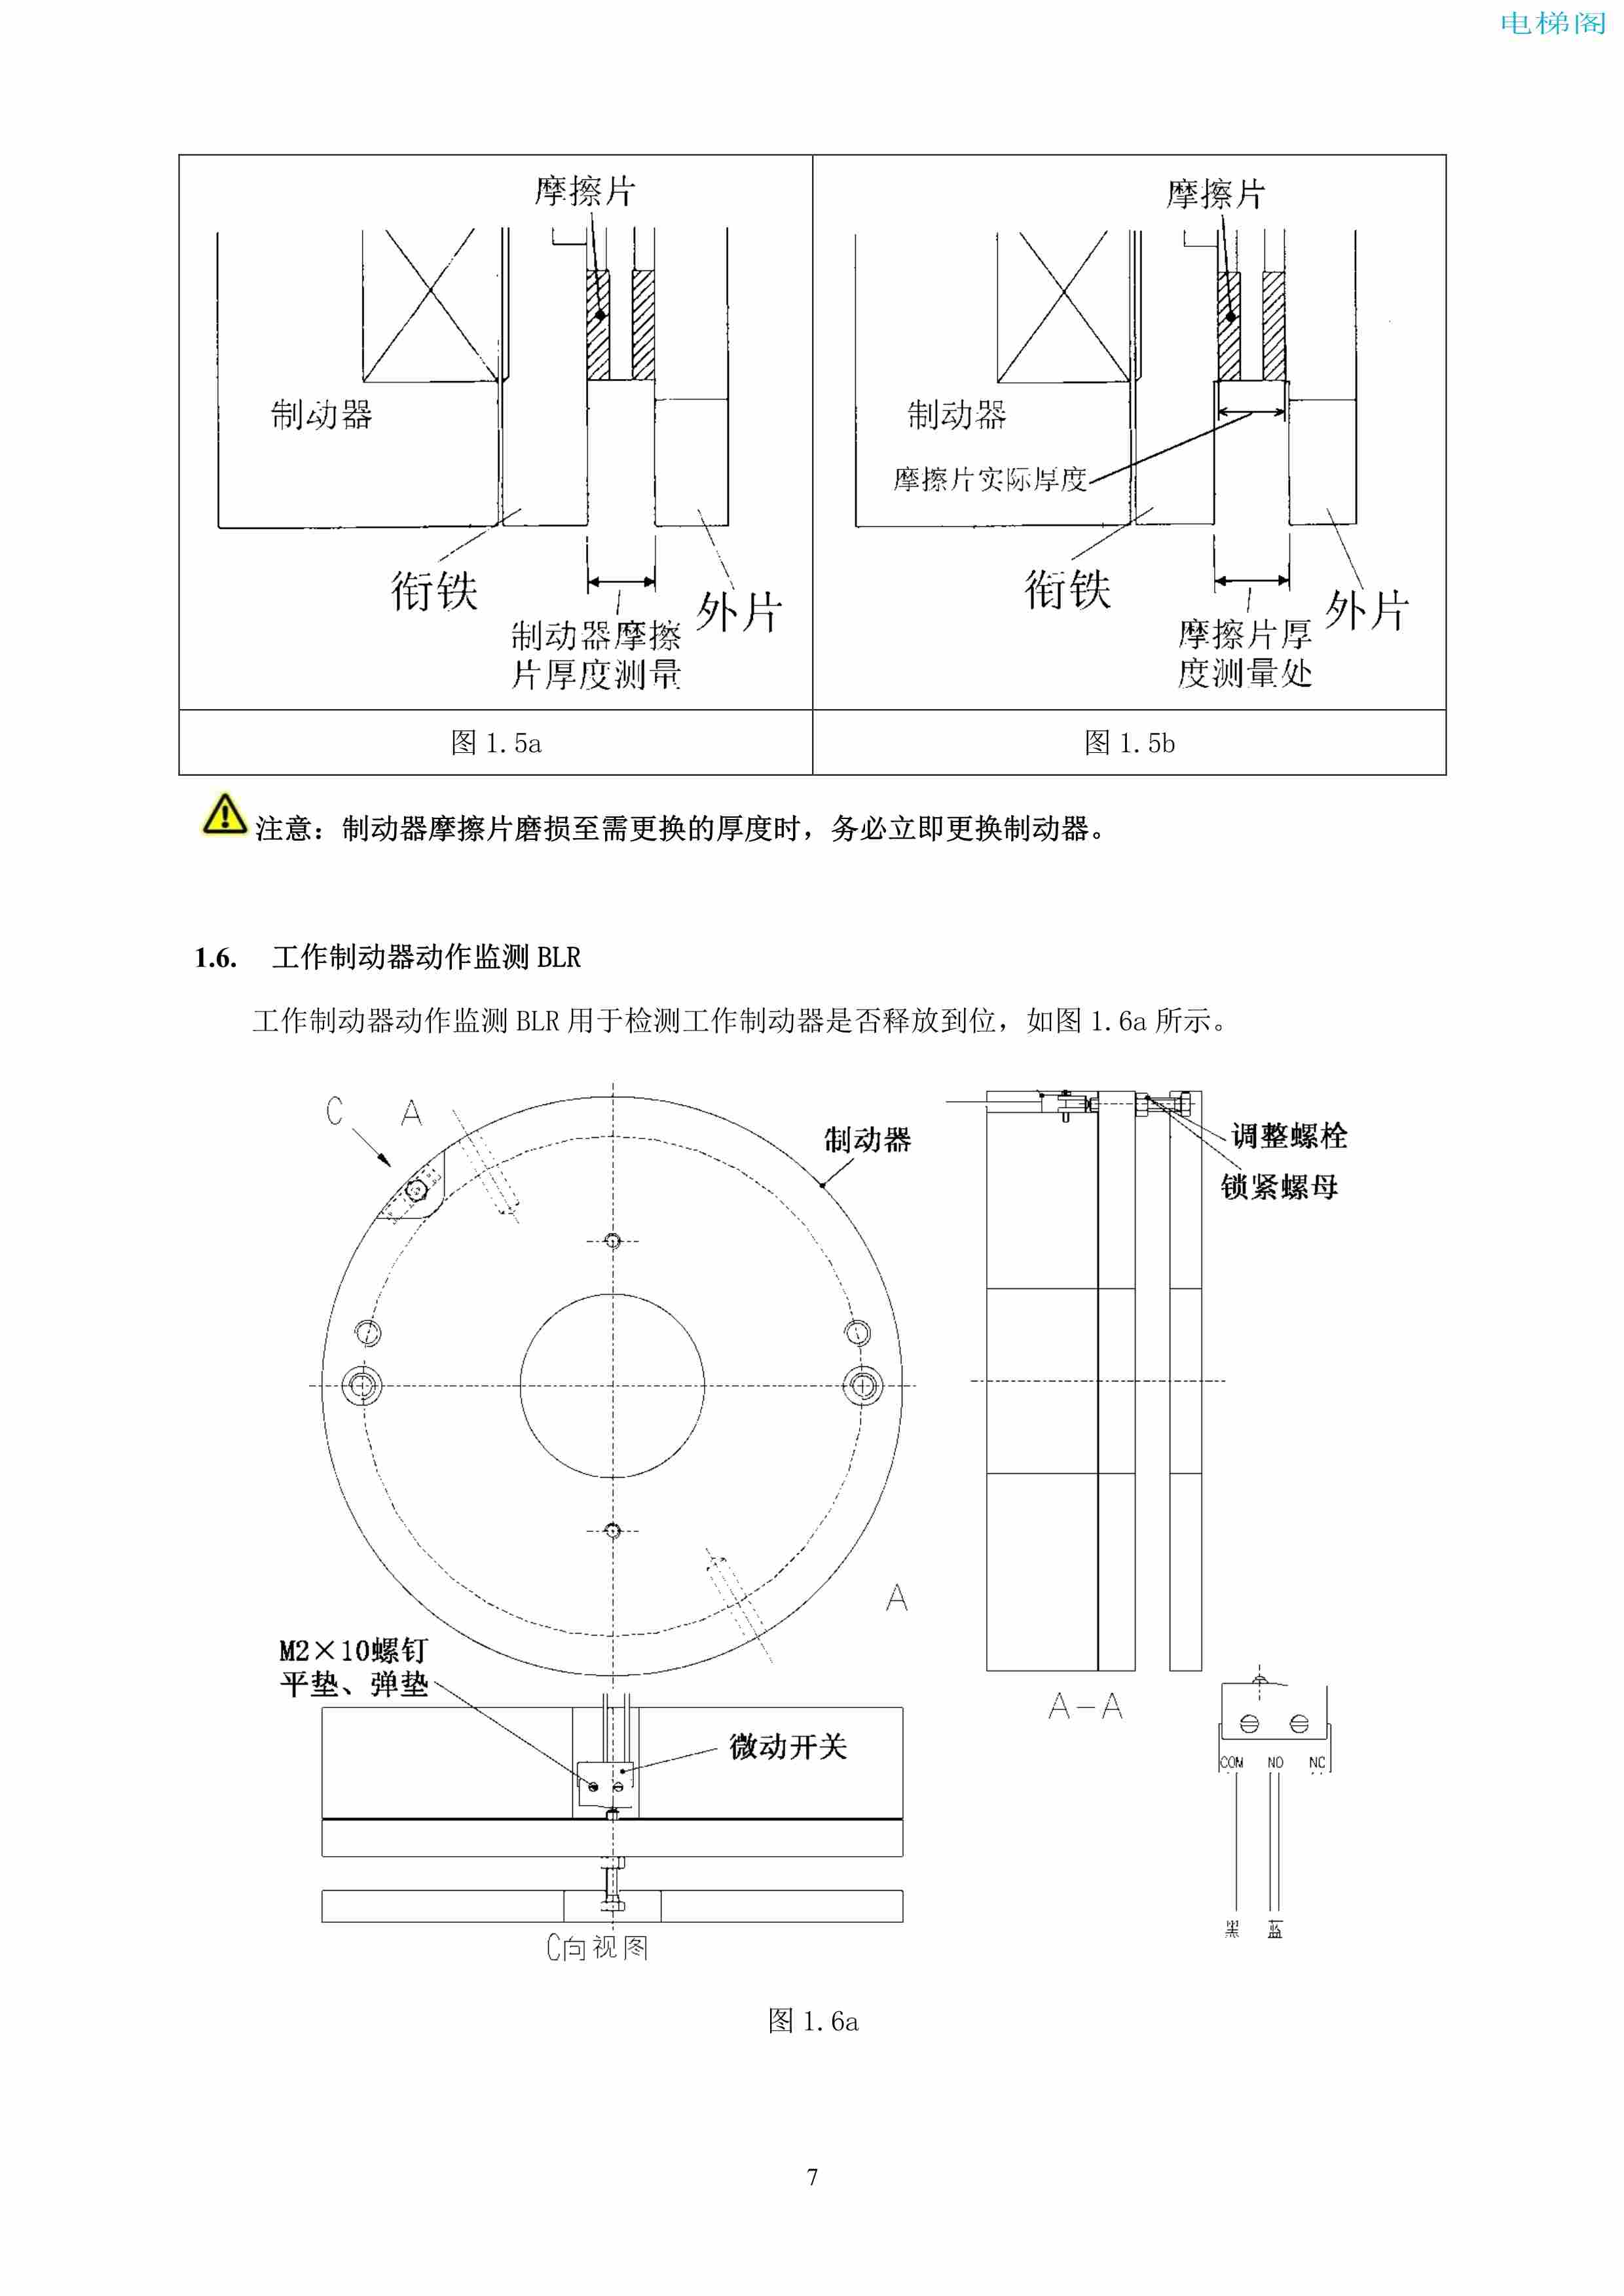 上海三菱电梯有限公司自动扶梯制动器维护作业要领汇编_8.jpg